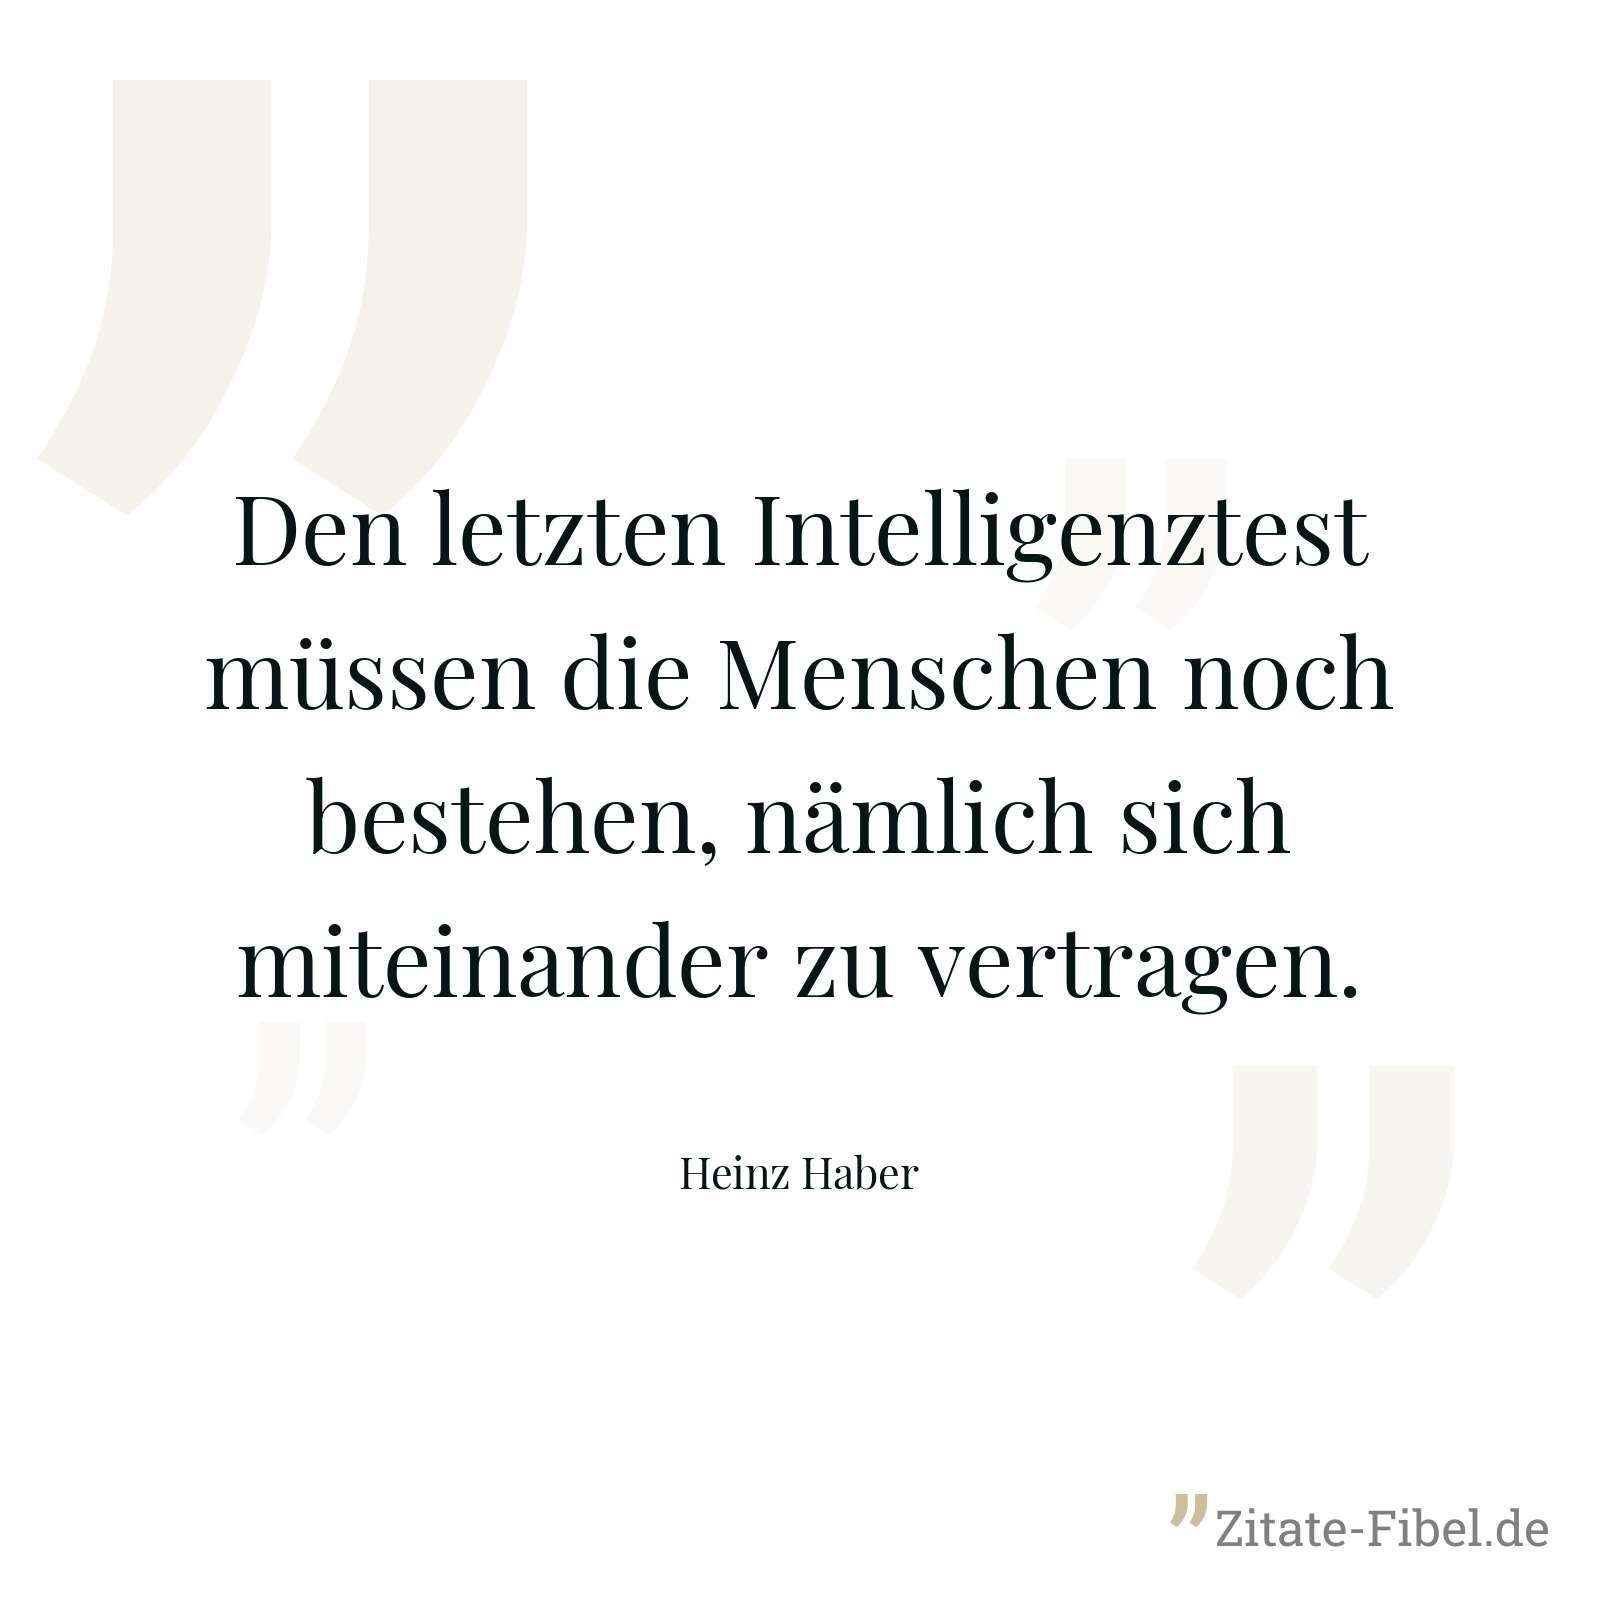 Den letzten Intelligenztest müssen die Menschen noch bestehen, nämlich sich miteinander zu vertragen. - Heinz Haber